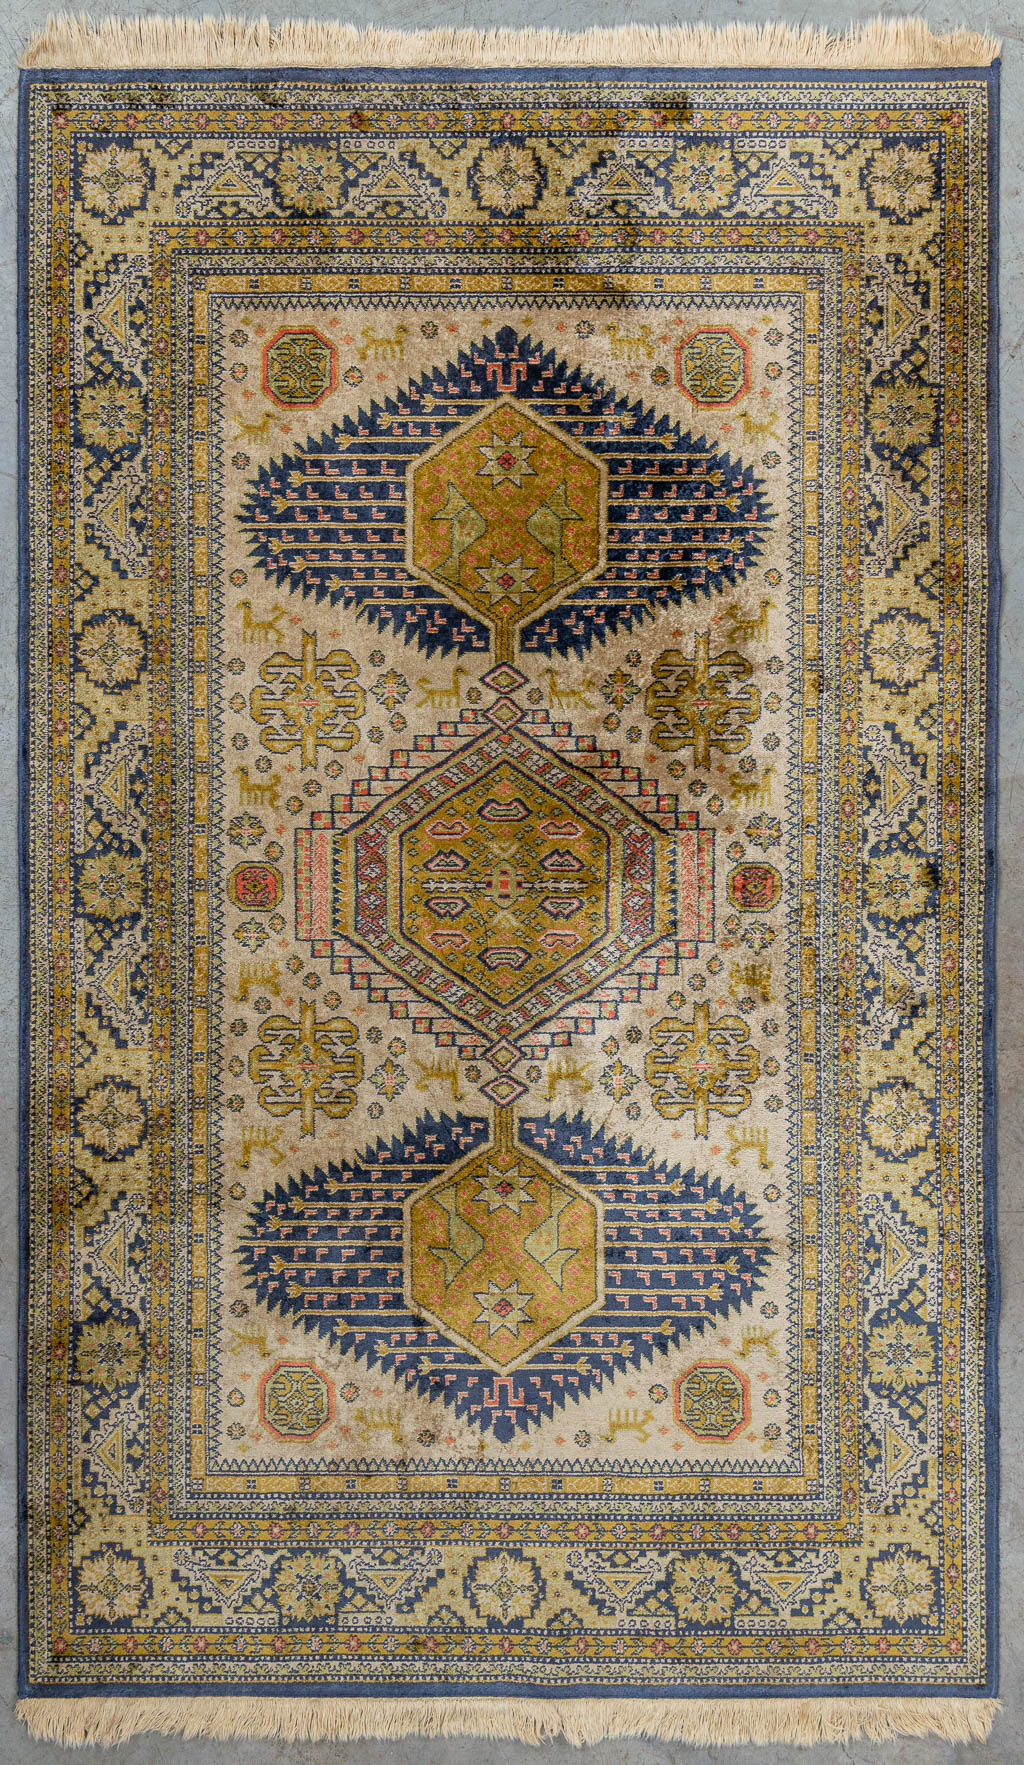 A carpet made of silk, machine made. (170 x 102 cm)